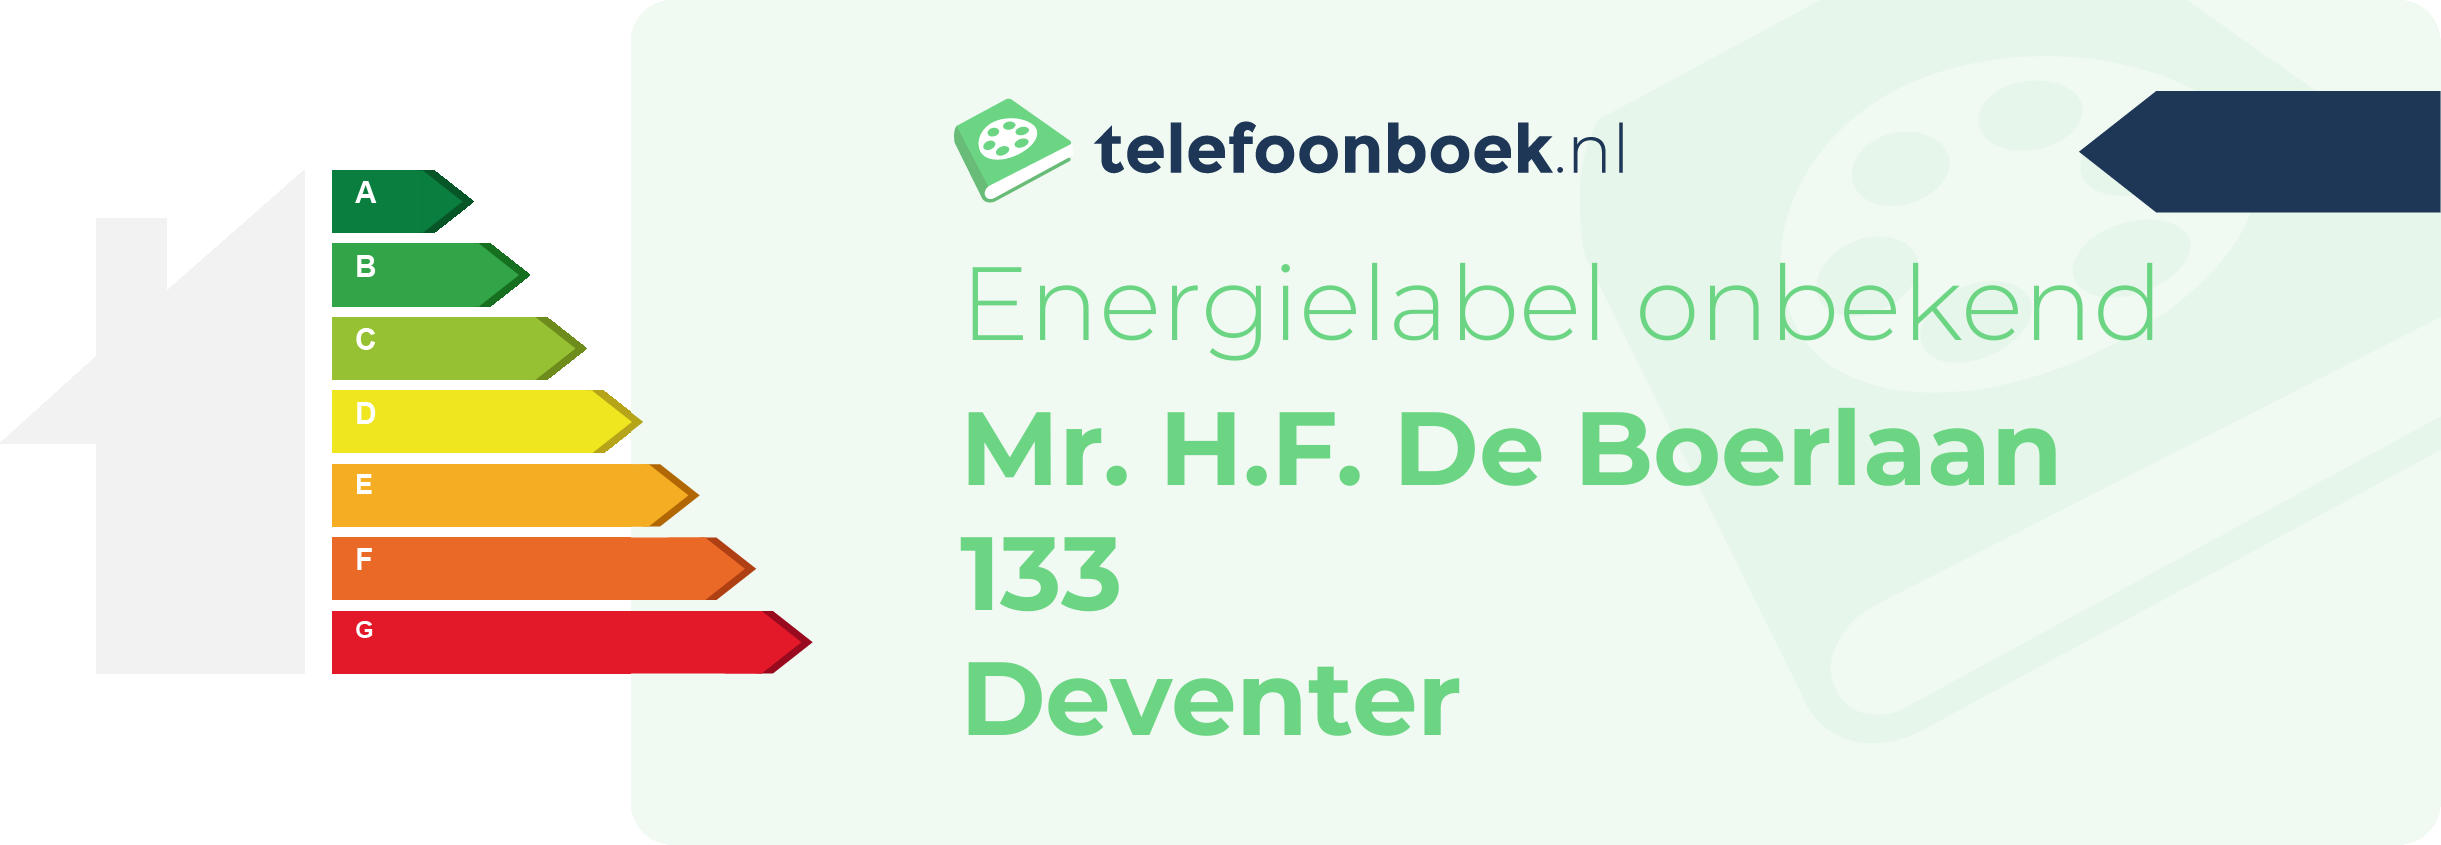 Energielabel Mr. H.F. De Boerlaan 133 Deventer